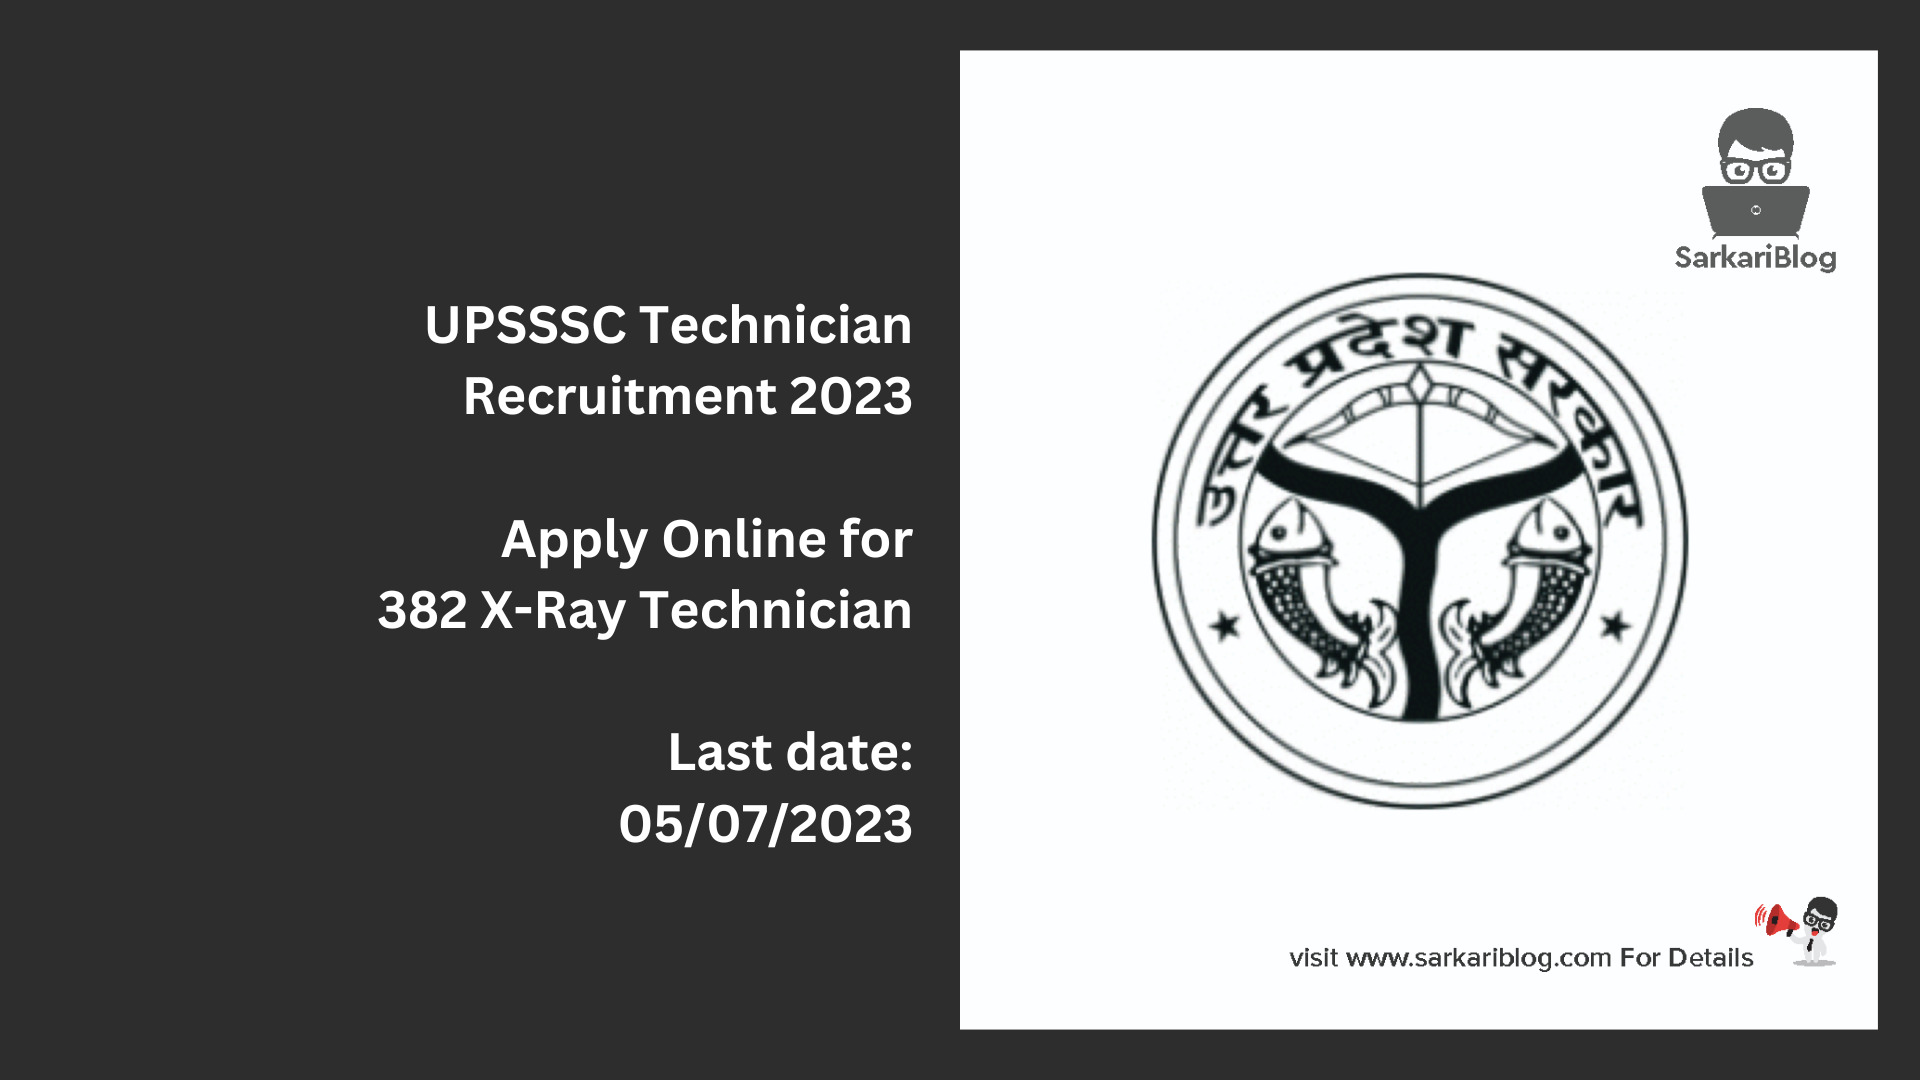 UPSSSC Technician Recruitment 2023